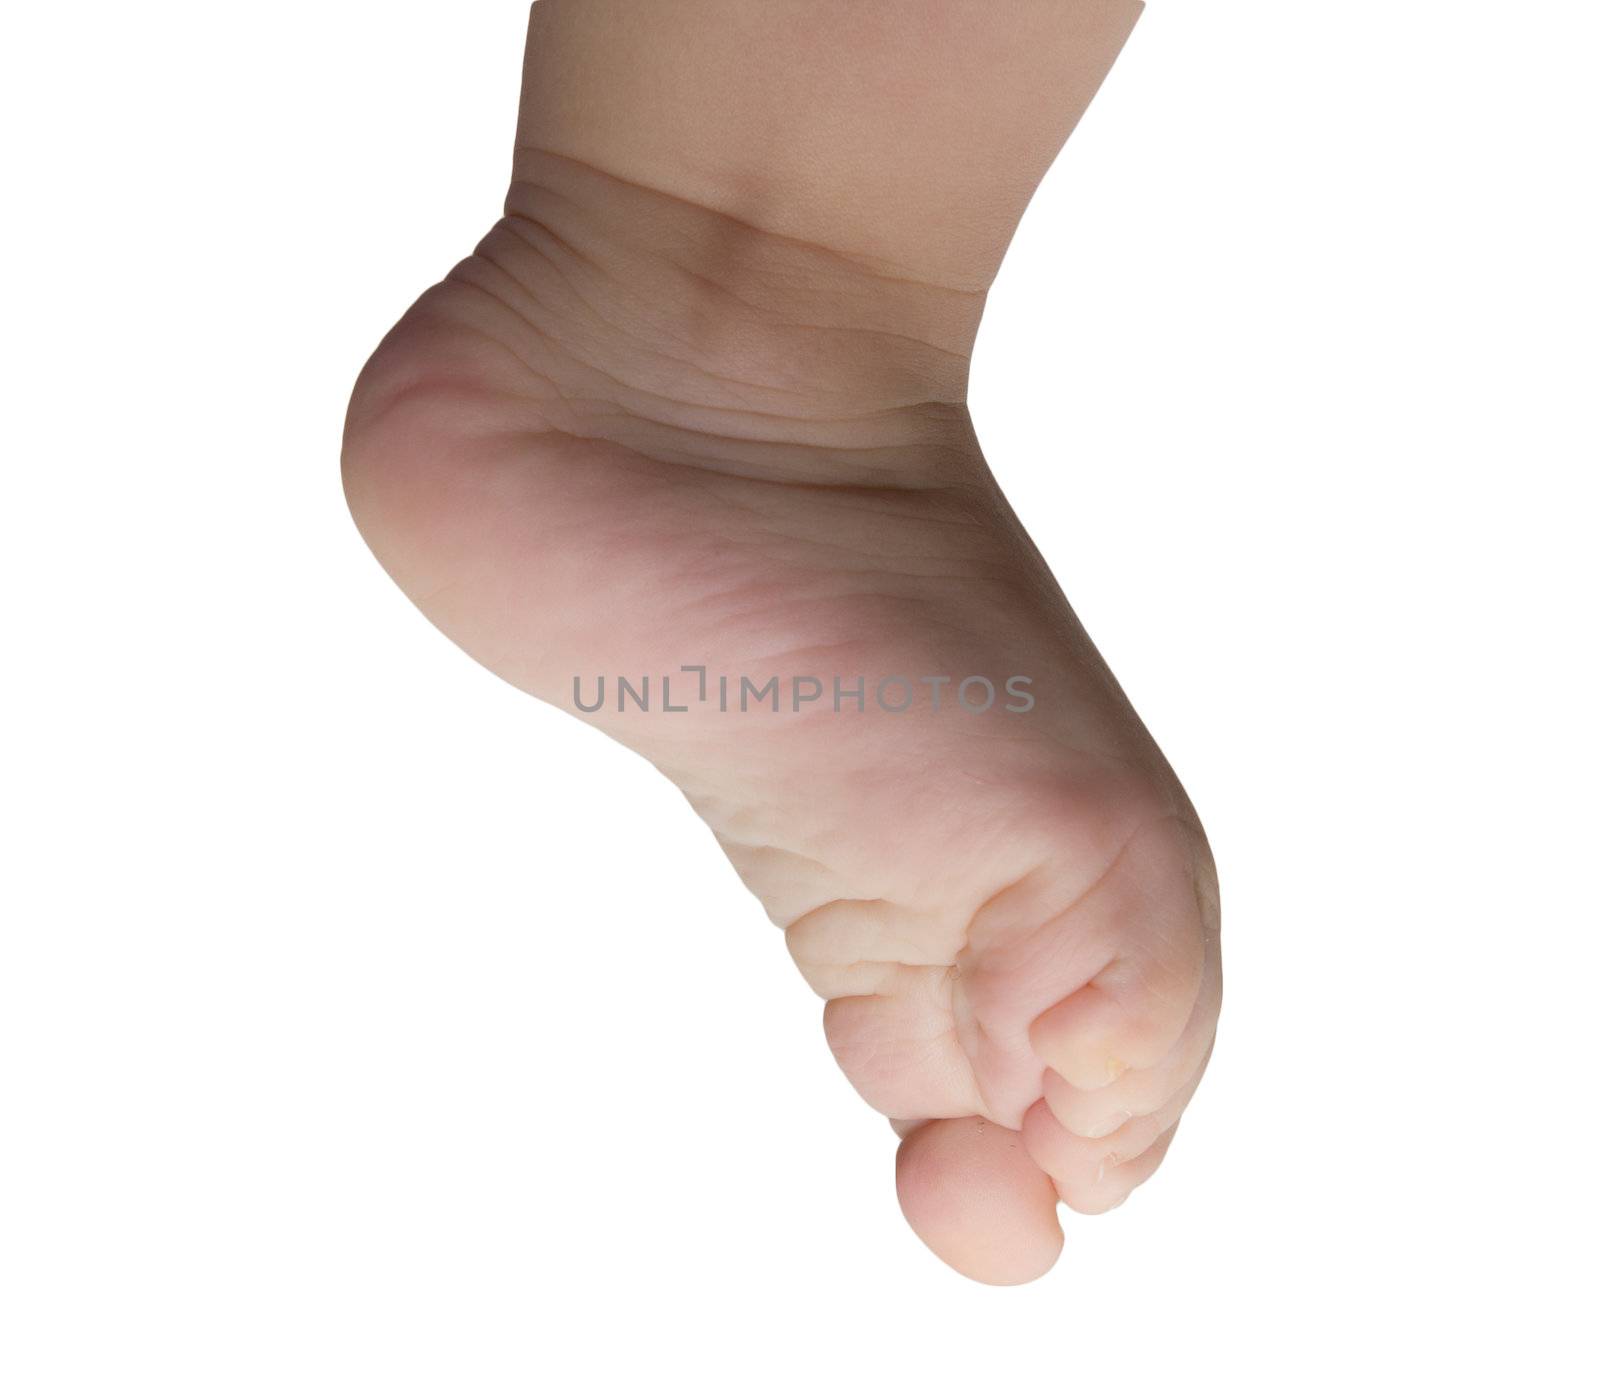 children's foot on a white background by schankz